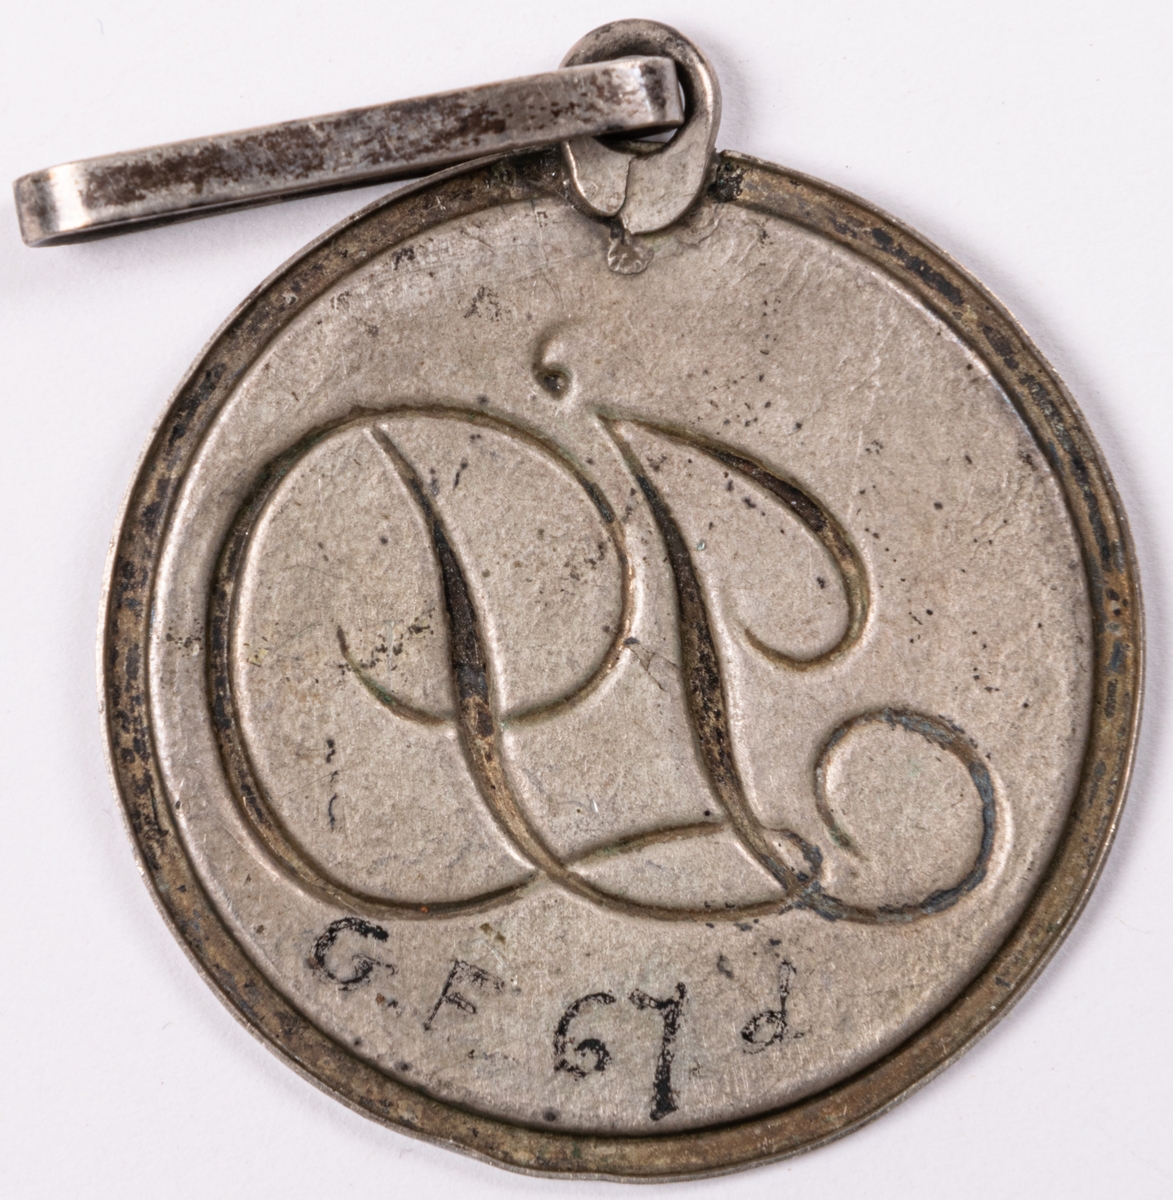 Emblem för föreningen Idka Dygden. Rund form med hänge.
Del av 6 stycken föreningestecken i silver, två korsformiga, 4 runda.